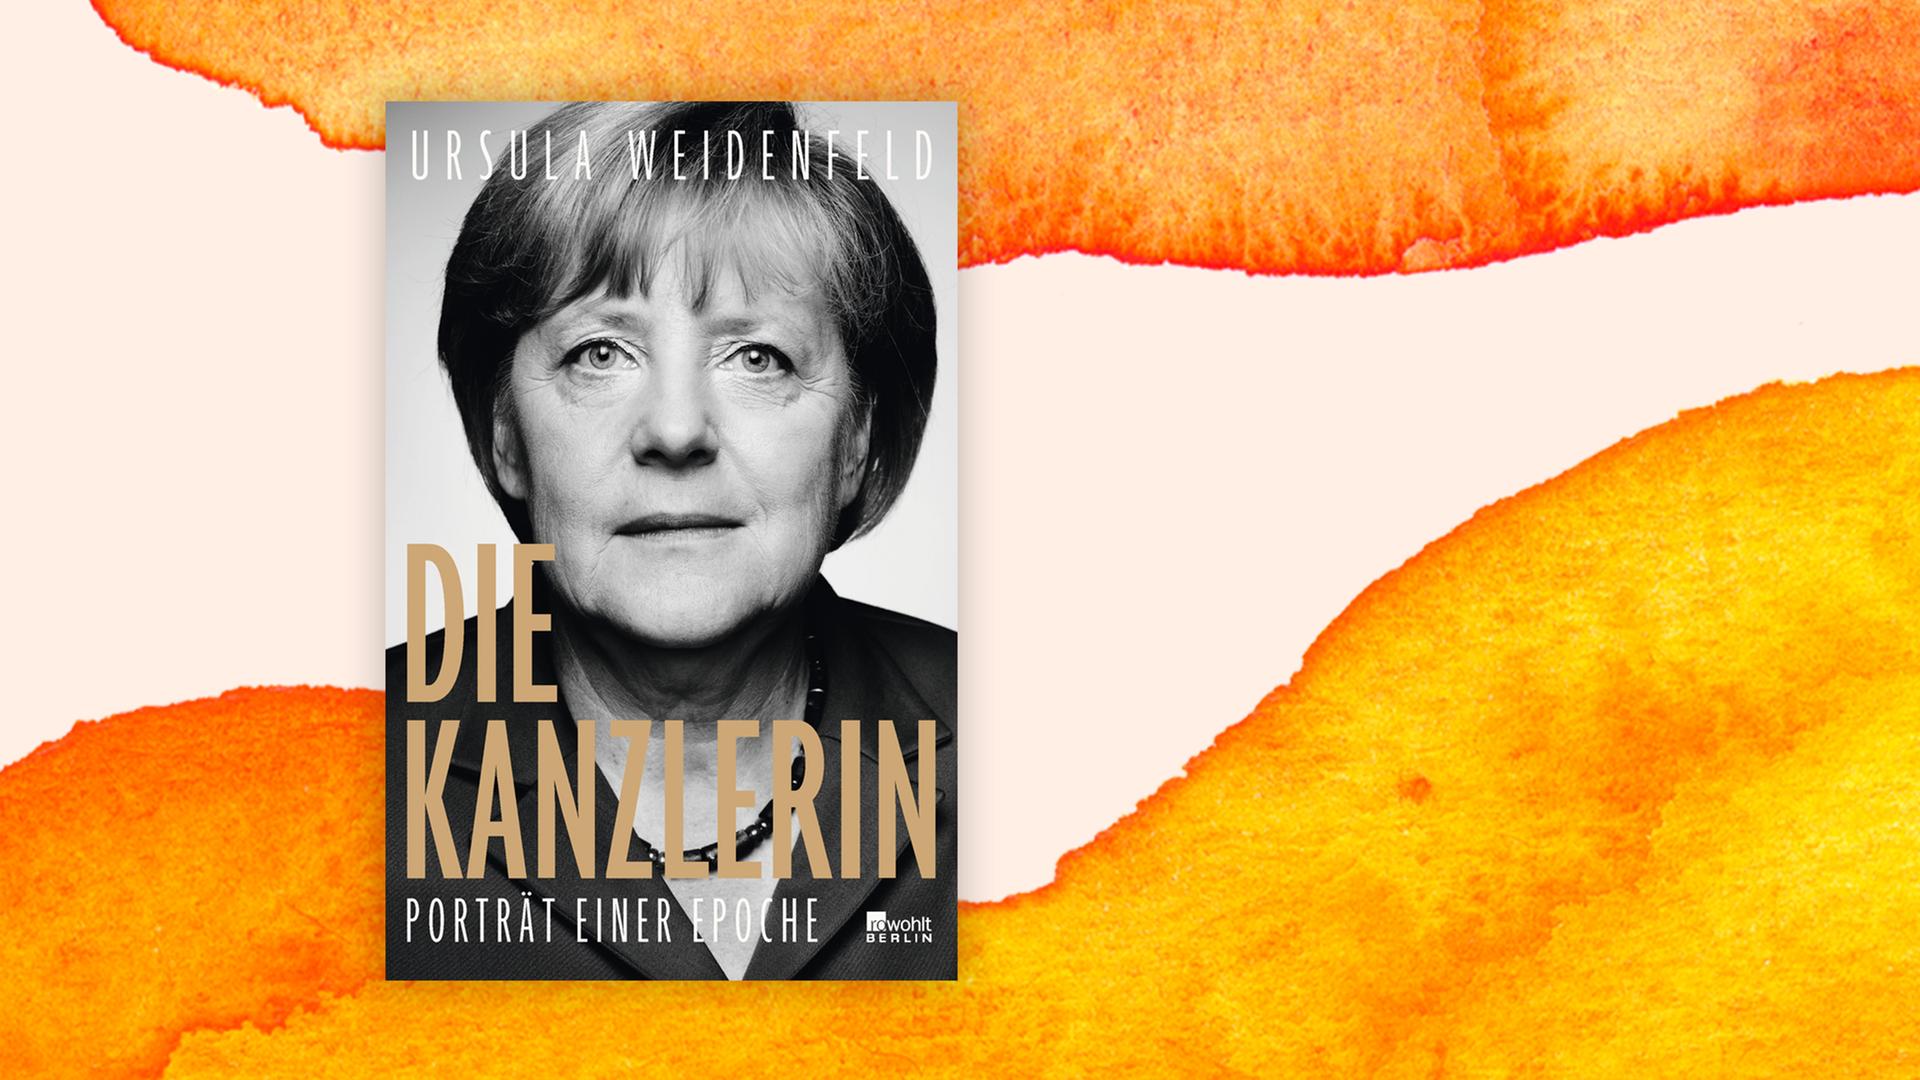 Buchcover: "Die Kanzlerin. Porträt einer Epoche" von Ursula Weidenfeld